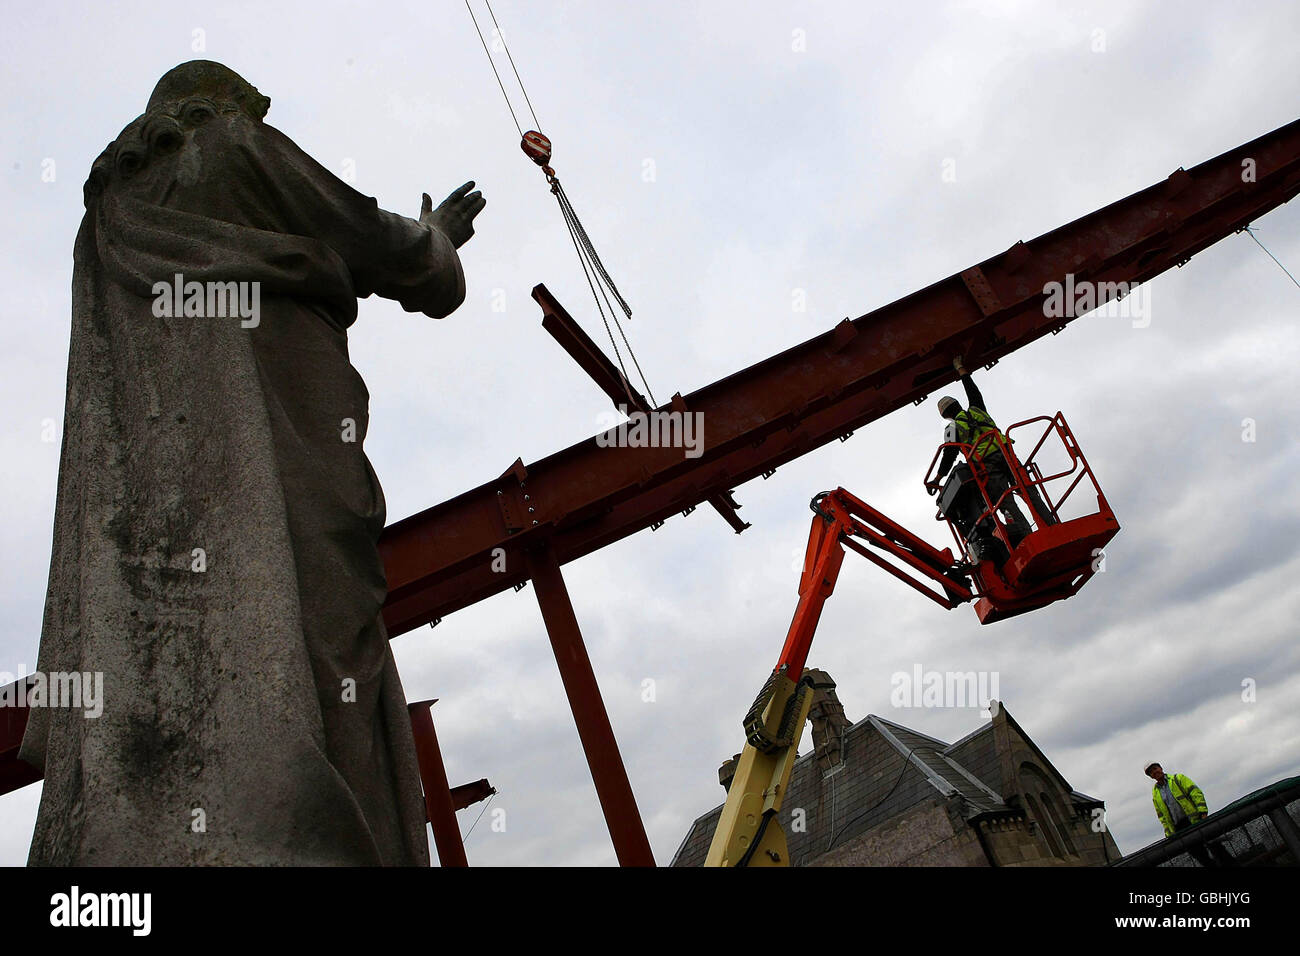 FOTO INDIPENDENTE Workman installare un tetto curvo lungo 44 m durante la costruzione di un nuovo museo nel sito di Glasnevin Cemetry. Foto Stock